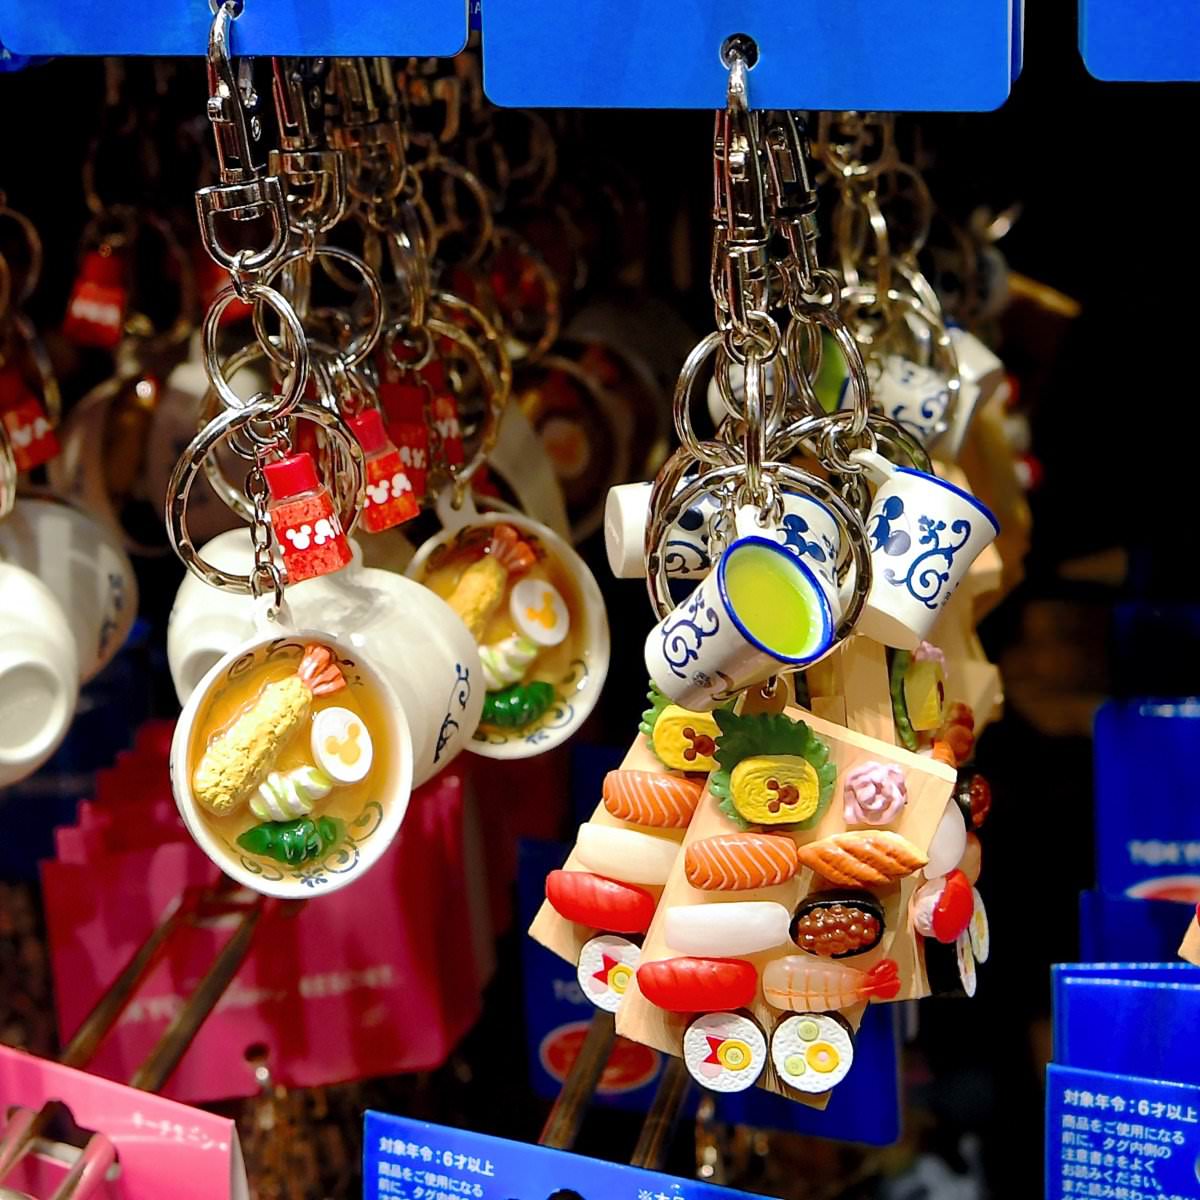 ミッキーモチーフのお寿司 天ぷらそば 東京ディズニーランド フードキーチェーン